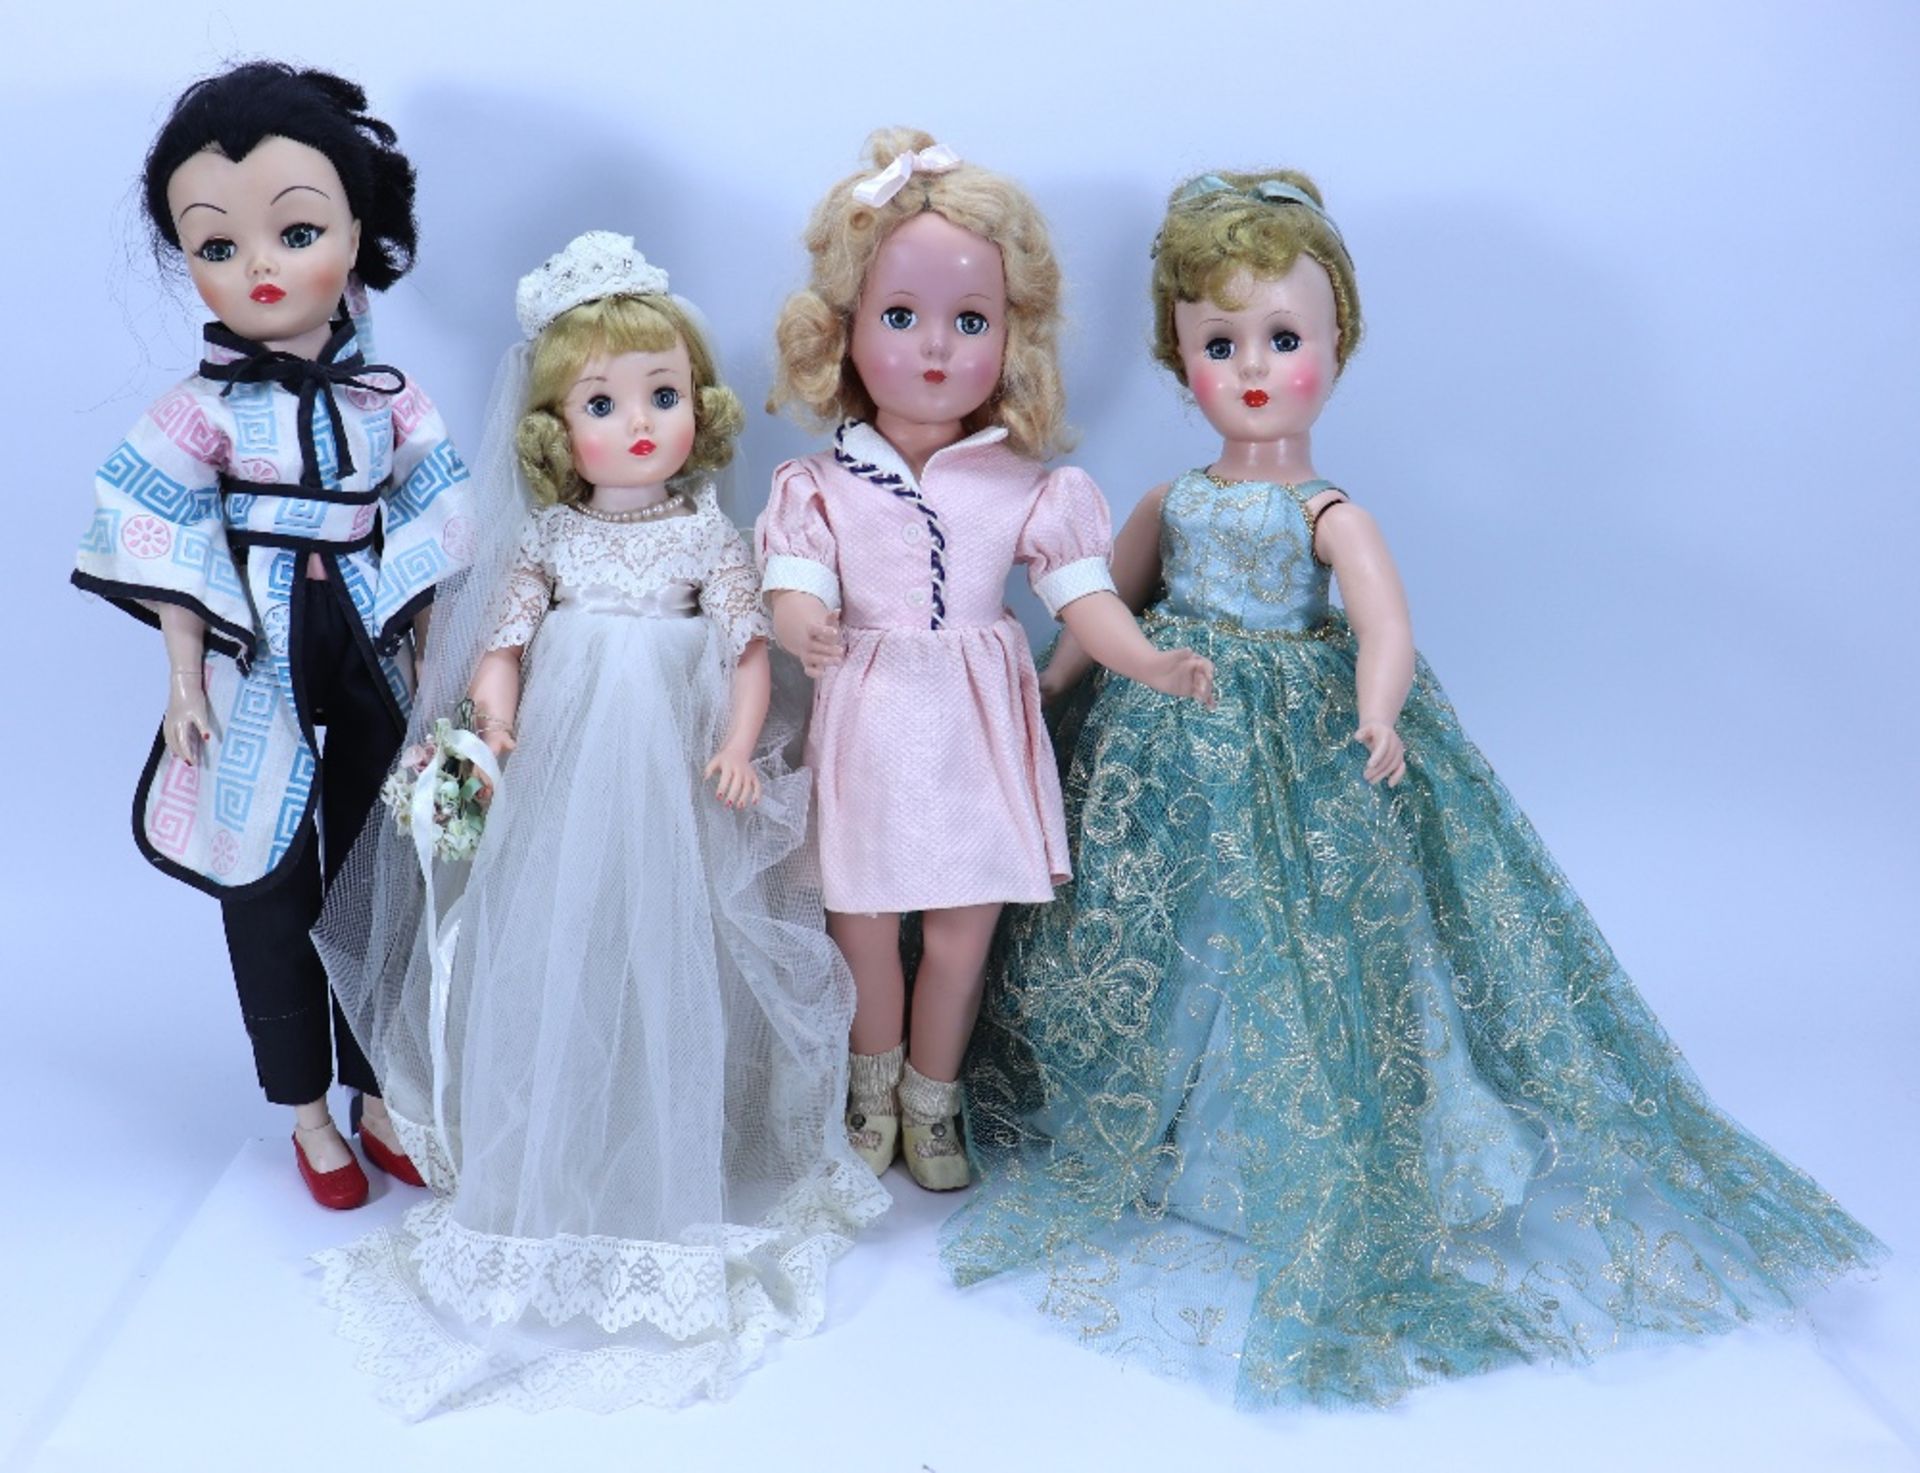 Three post war hard plastic dolls,